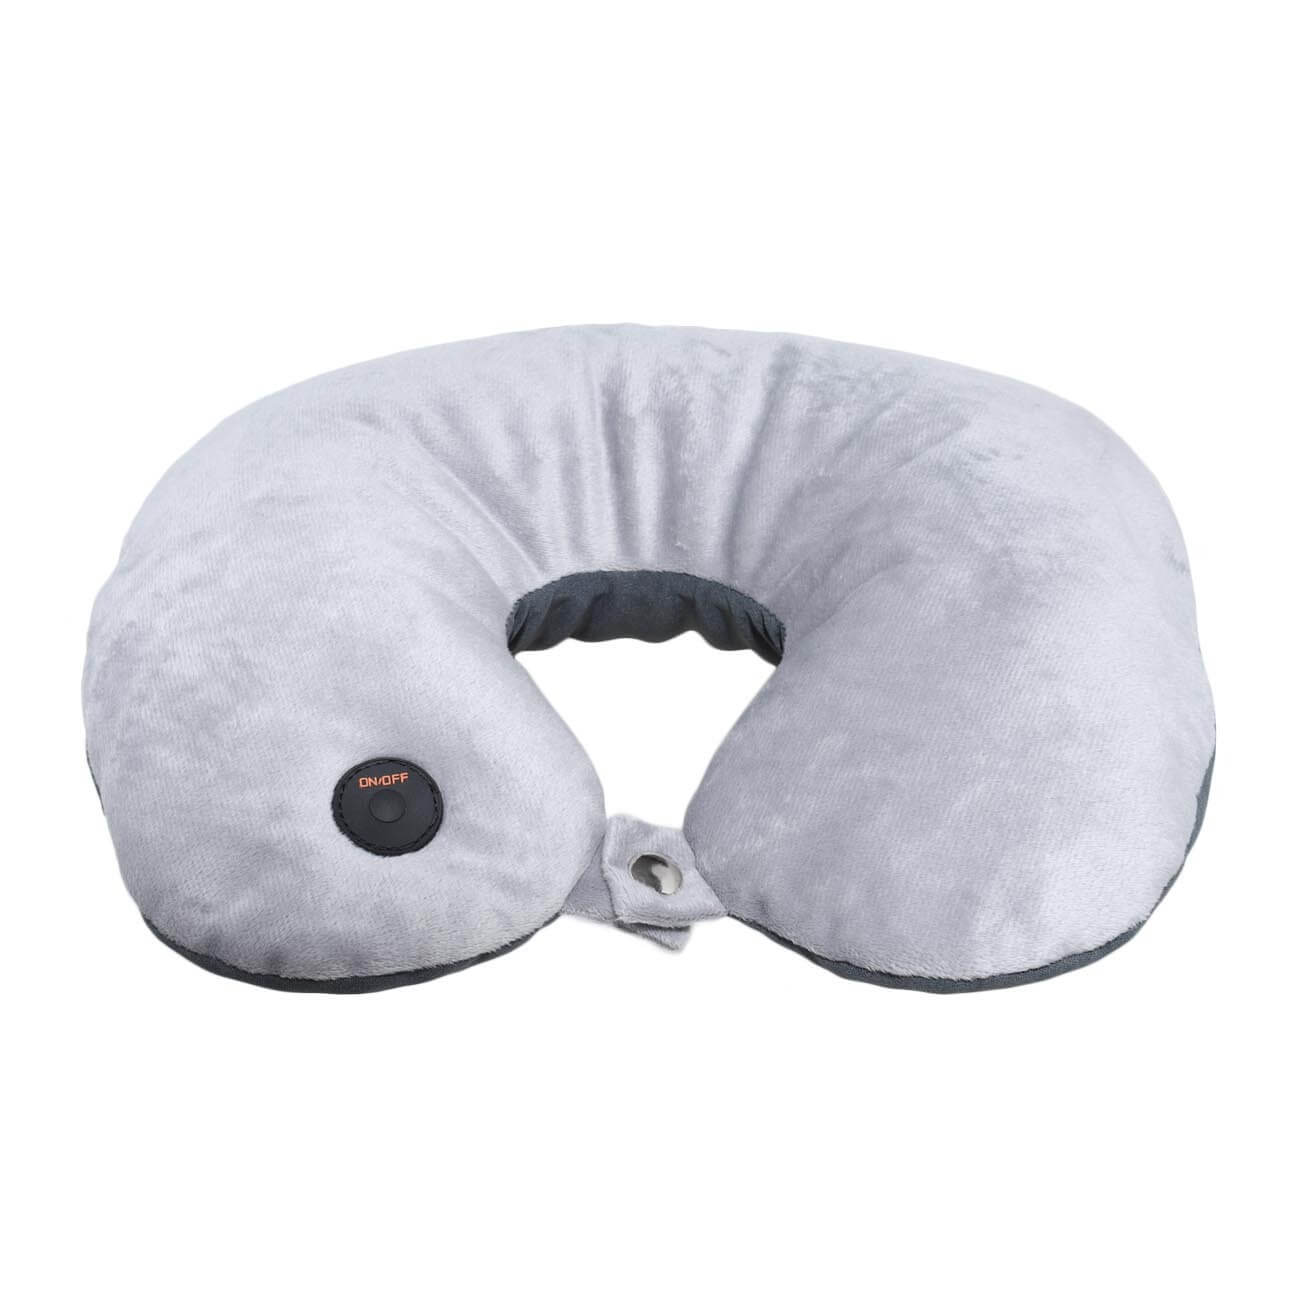 Подушка для путешествия, с вибрационным массажем, 2 в 1, полиэстер, серая, Relax